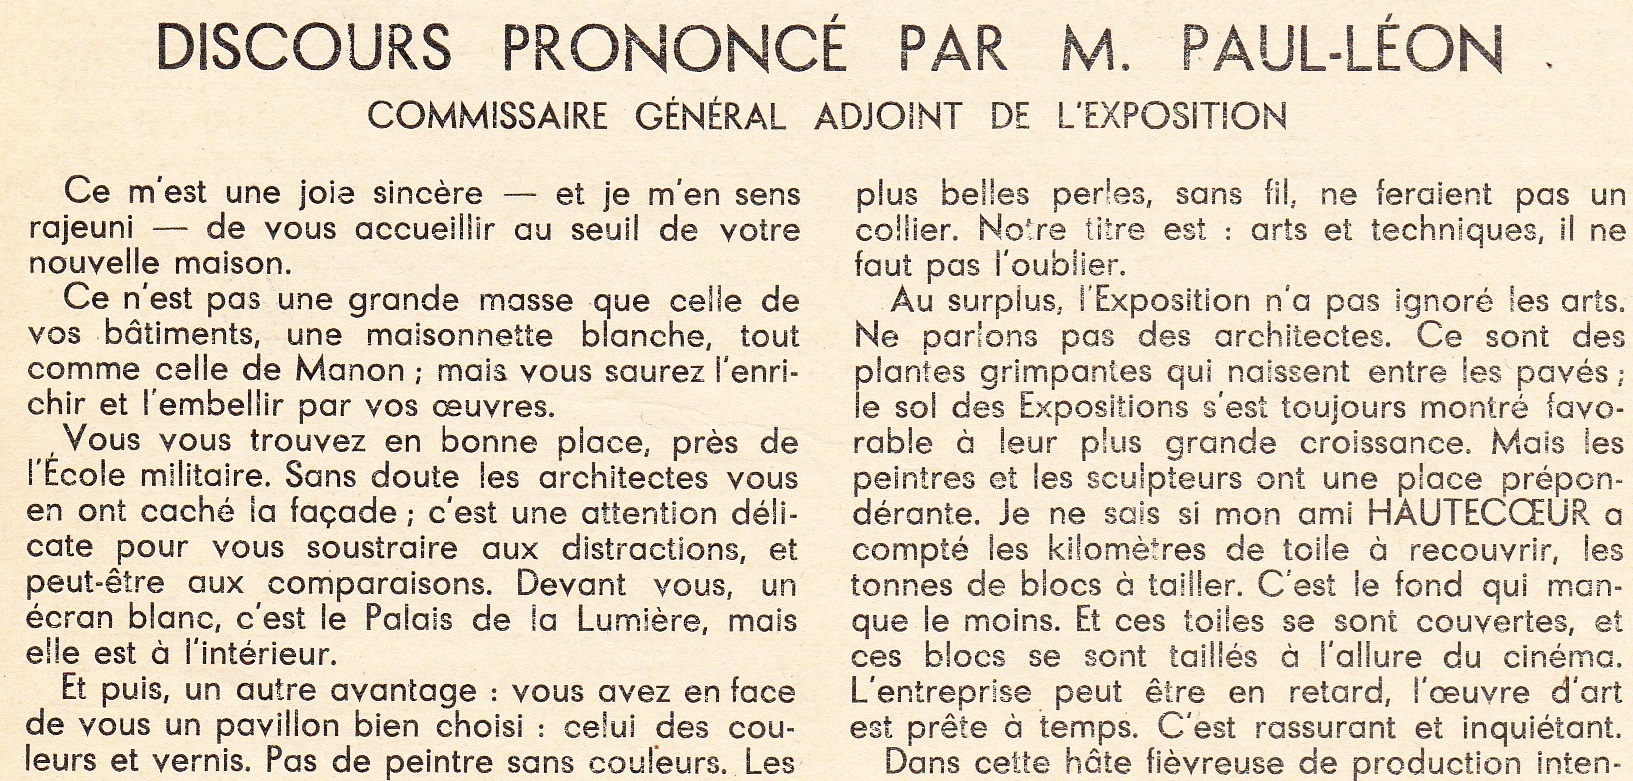 BULLETIN_193705_Discours-Paul-LEON-premiere-pierre_Partie-1.jpg